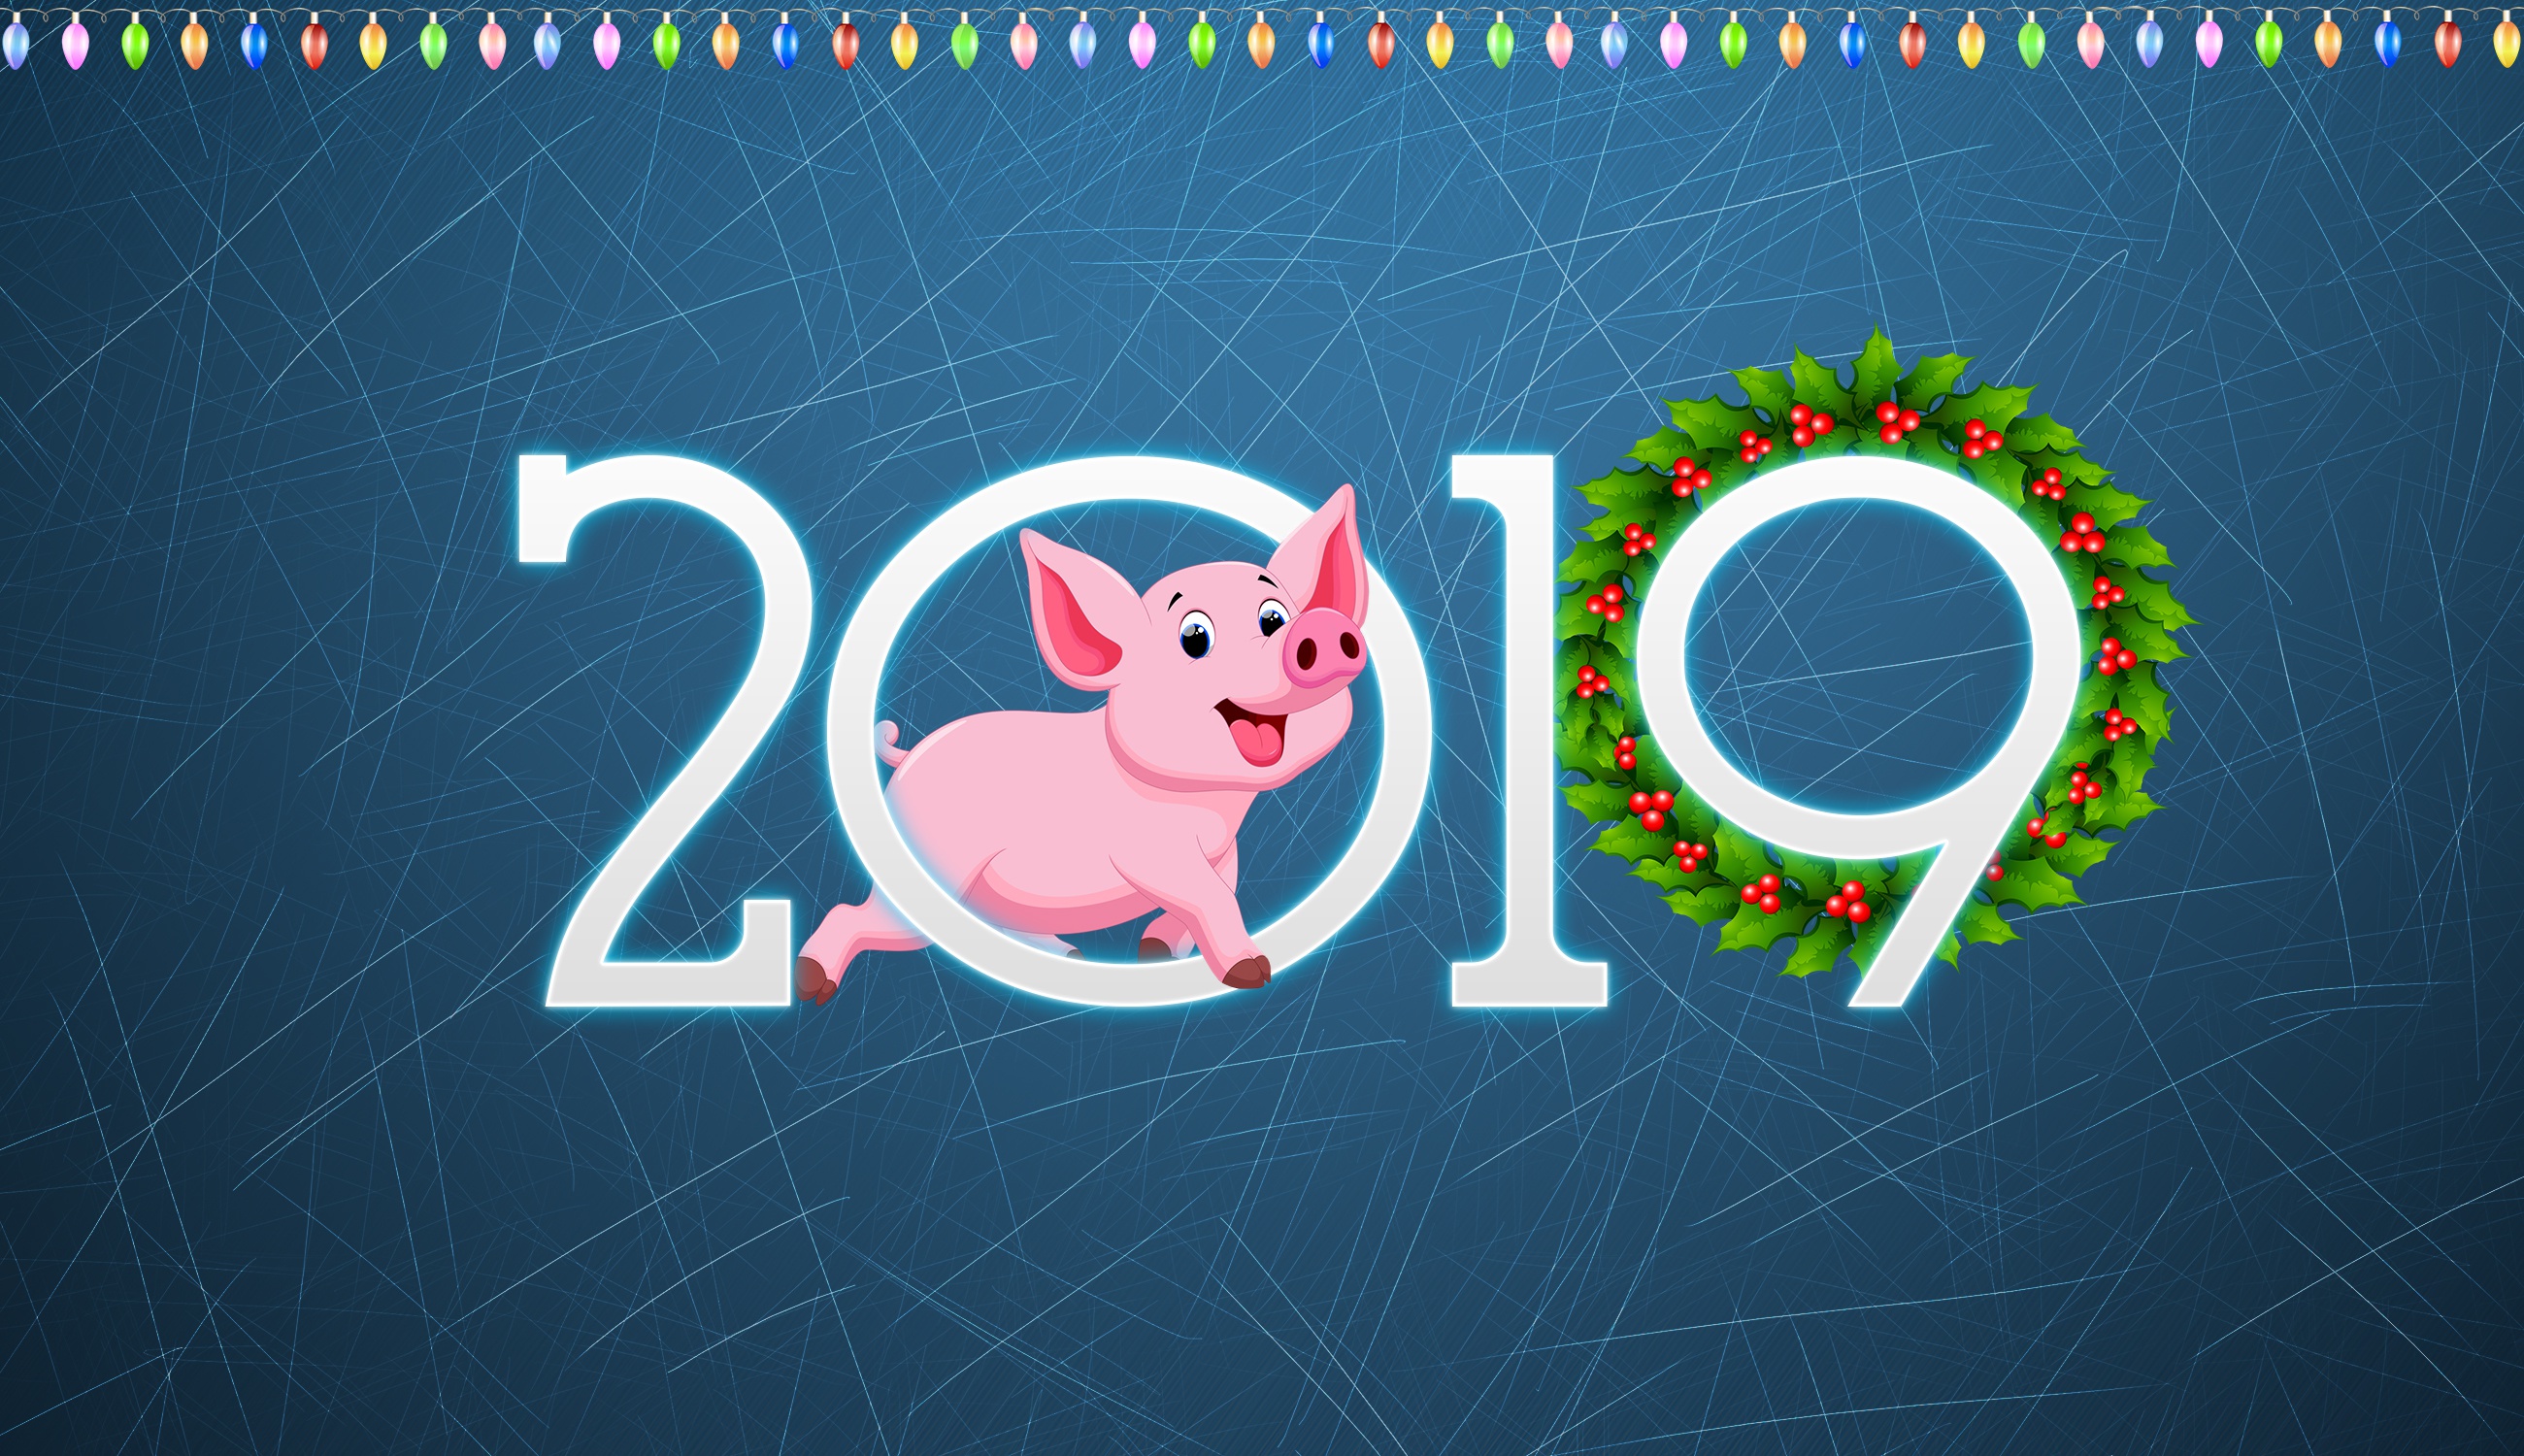 Скачать обои бесплатно Праздничные, Новый Год 2019 картинка на рабочий стол ПК